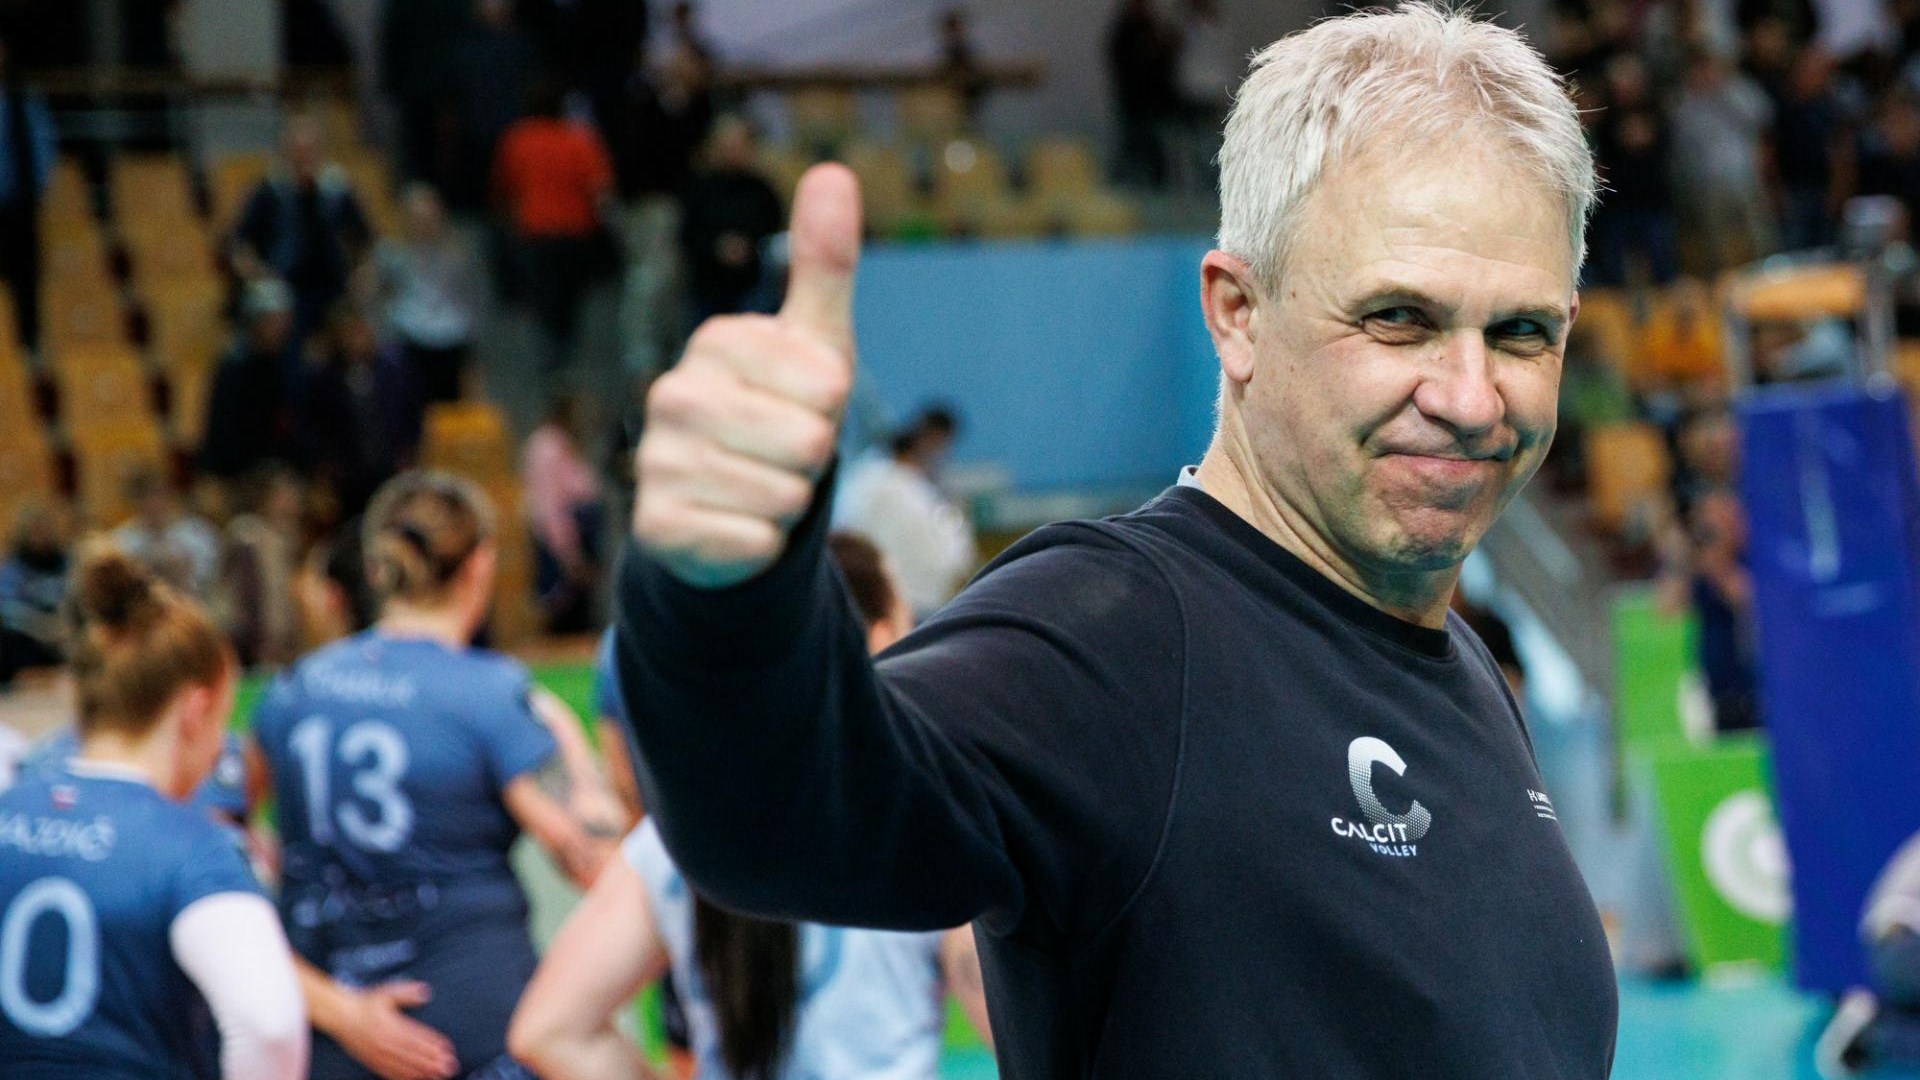 #intervju Bruno Najdič, trener odbojkaric Calcit Volleyja: Do uspehov se ne pride preko noči